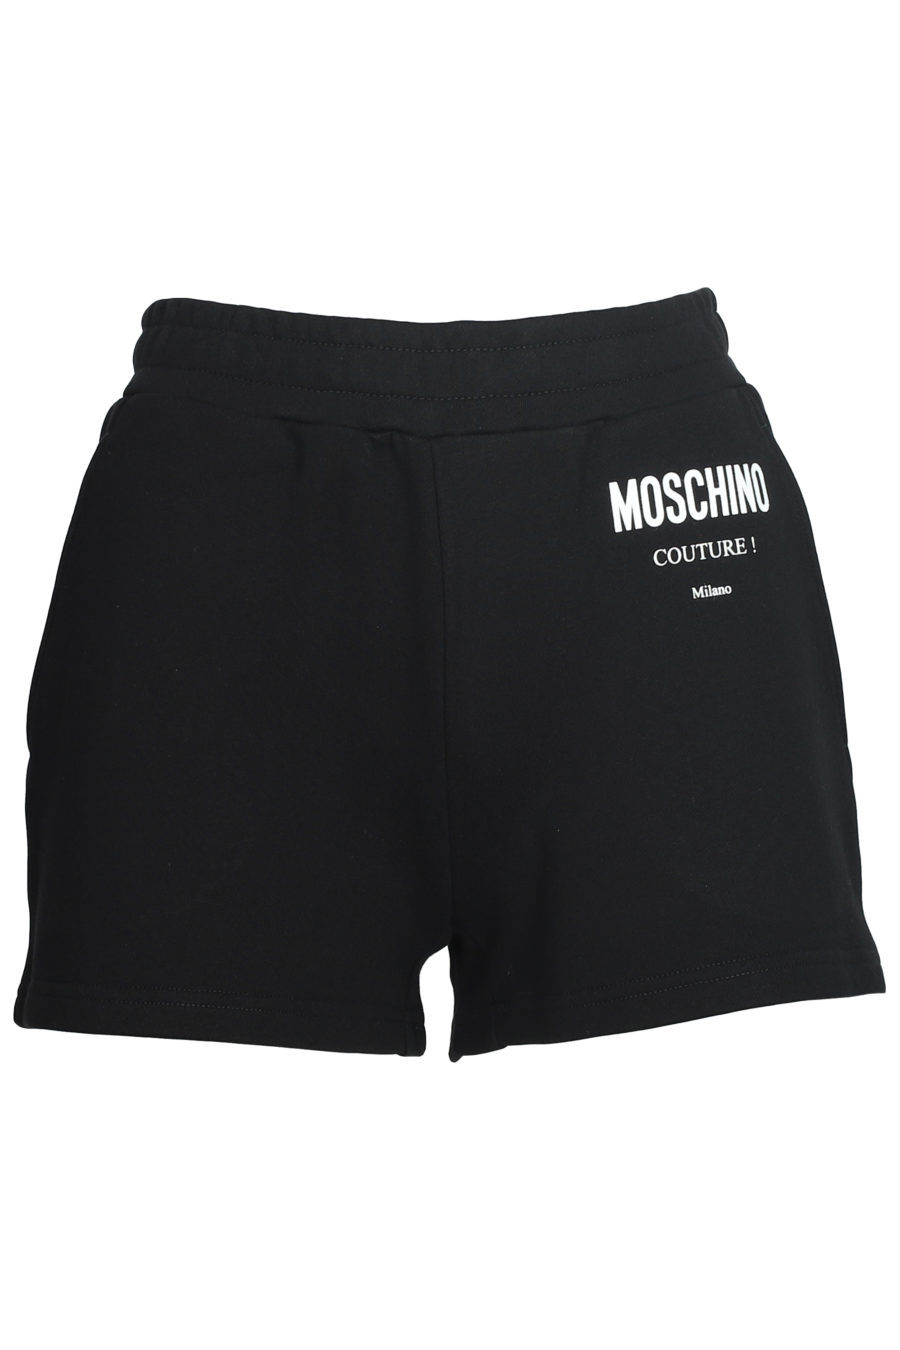 Schwarze Shorts mit Logo - IMG 5596